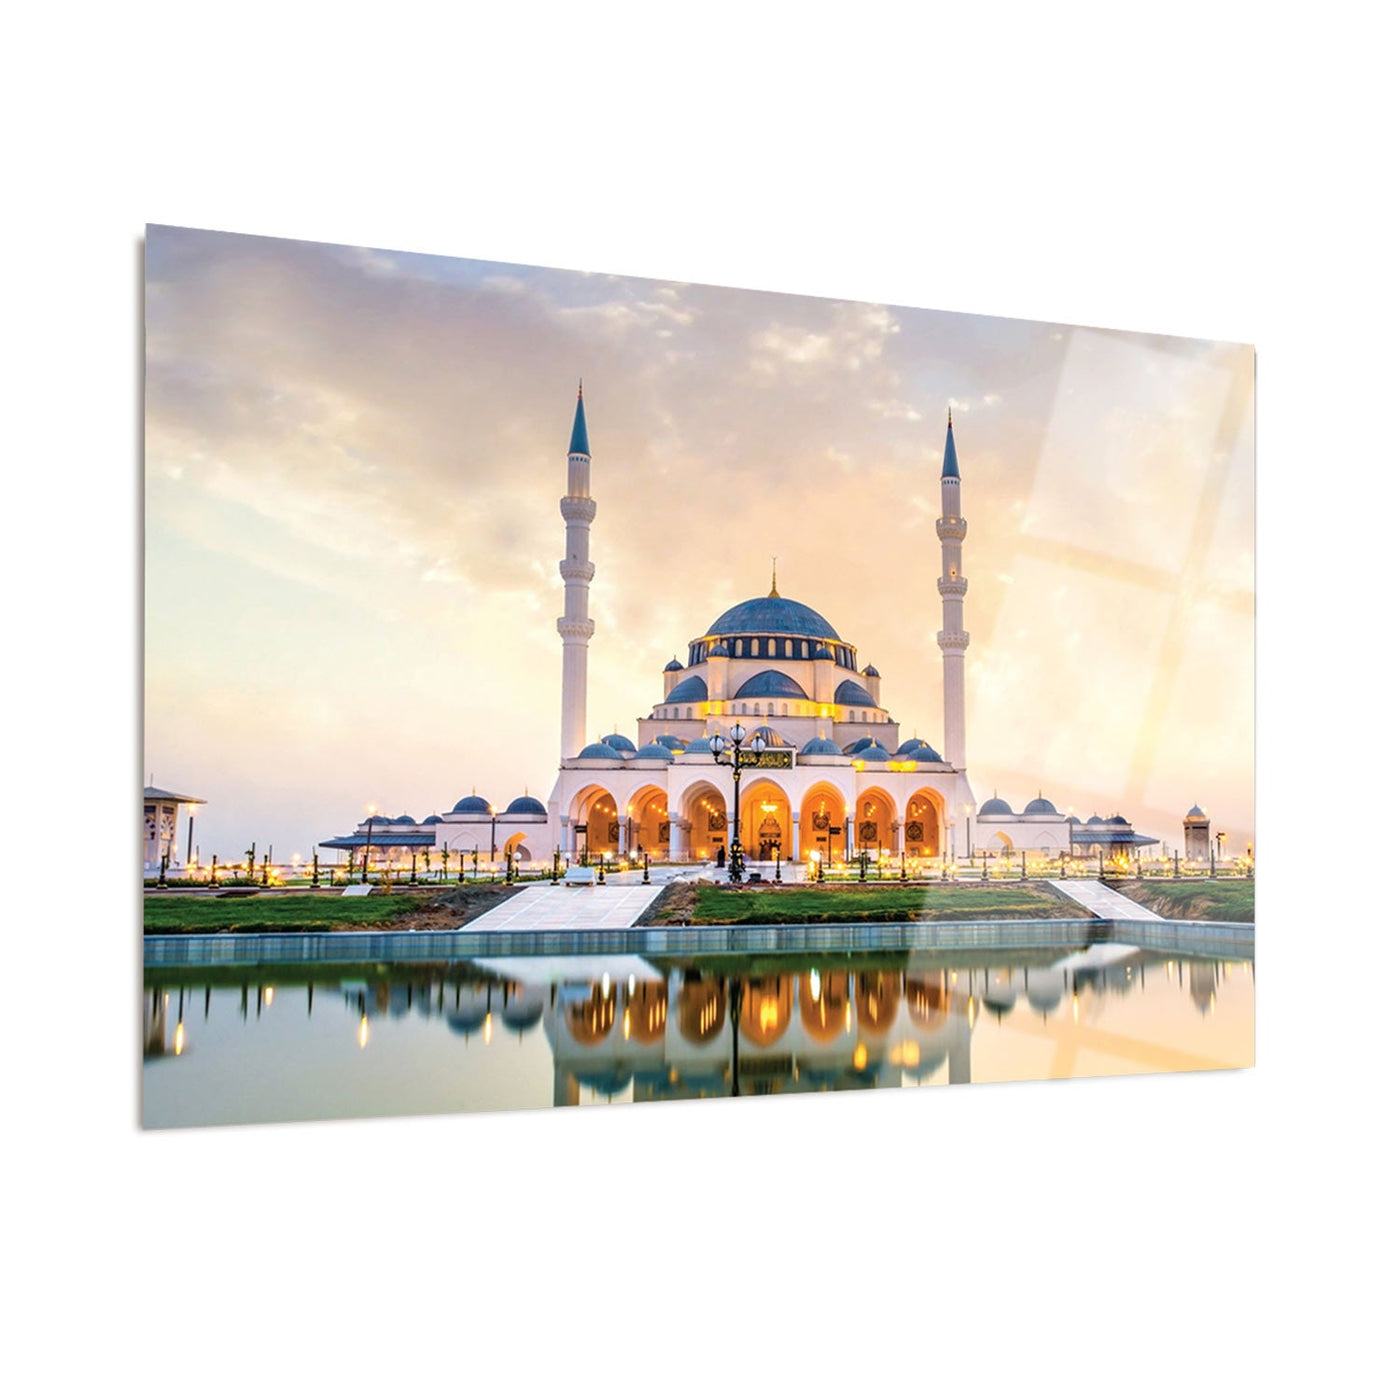 Sharjah Mosque Glass Islamic Wall Art - WTC001